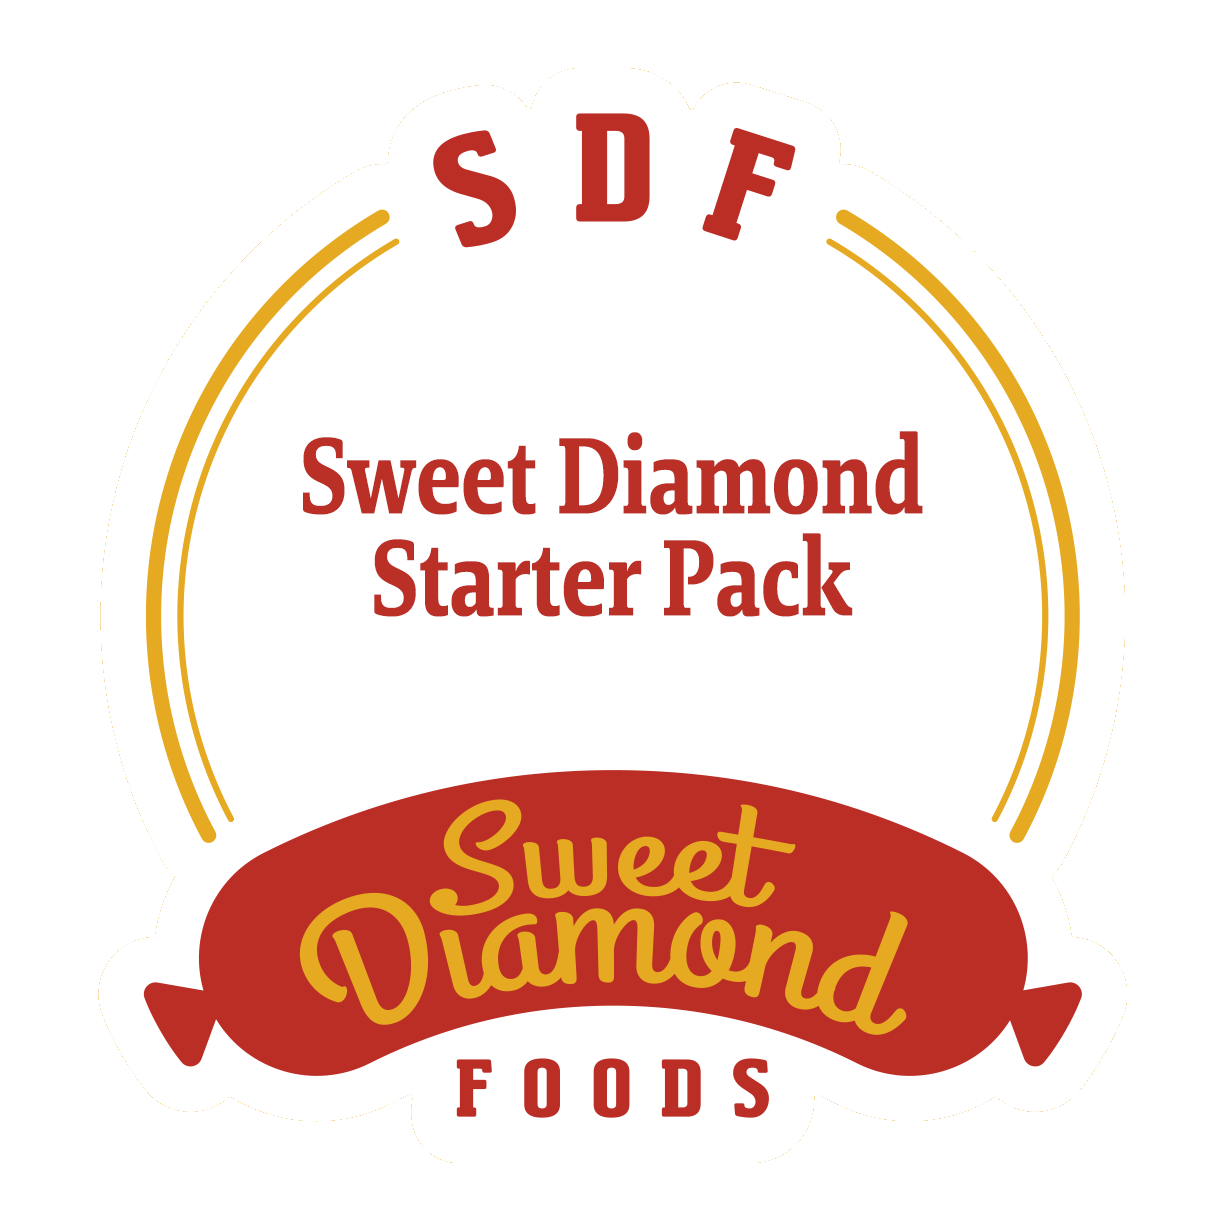 Sweet Diamond Starter Pack